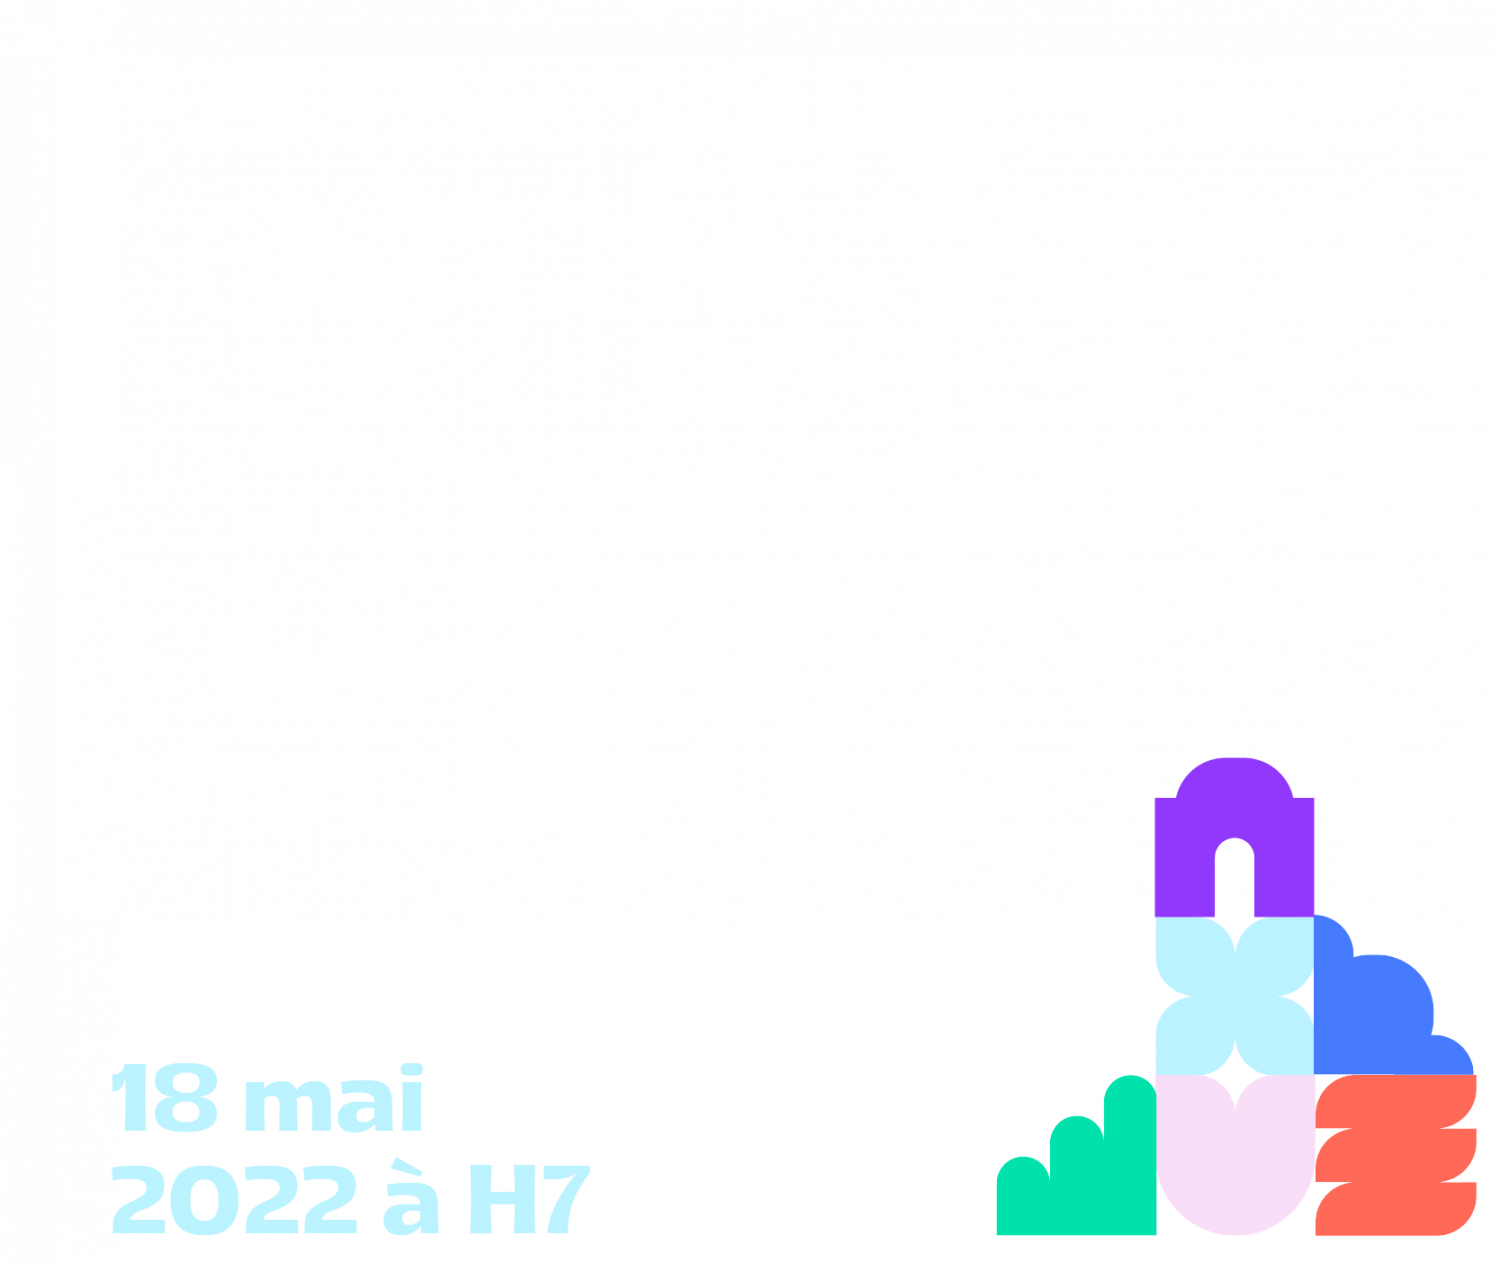 Logo de la startup H7 l'événement créé par et pour les start-up